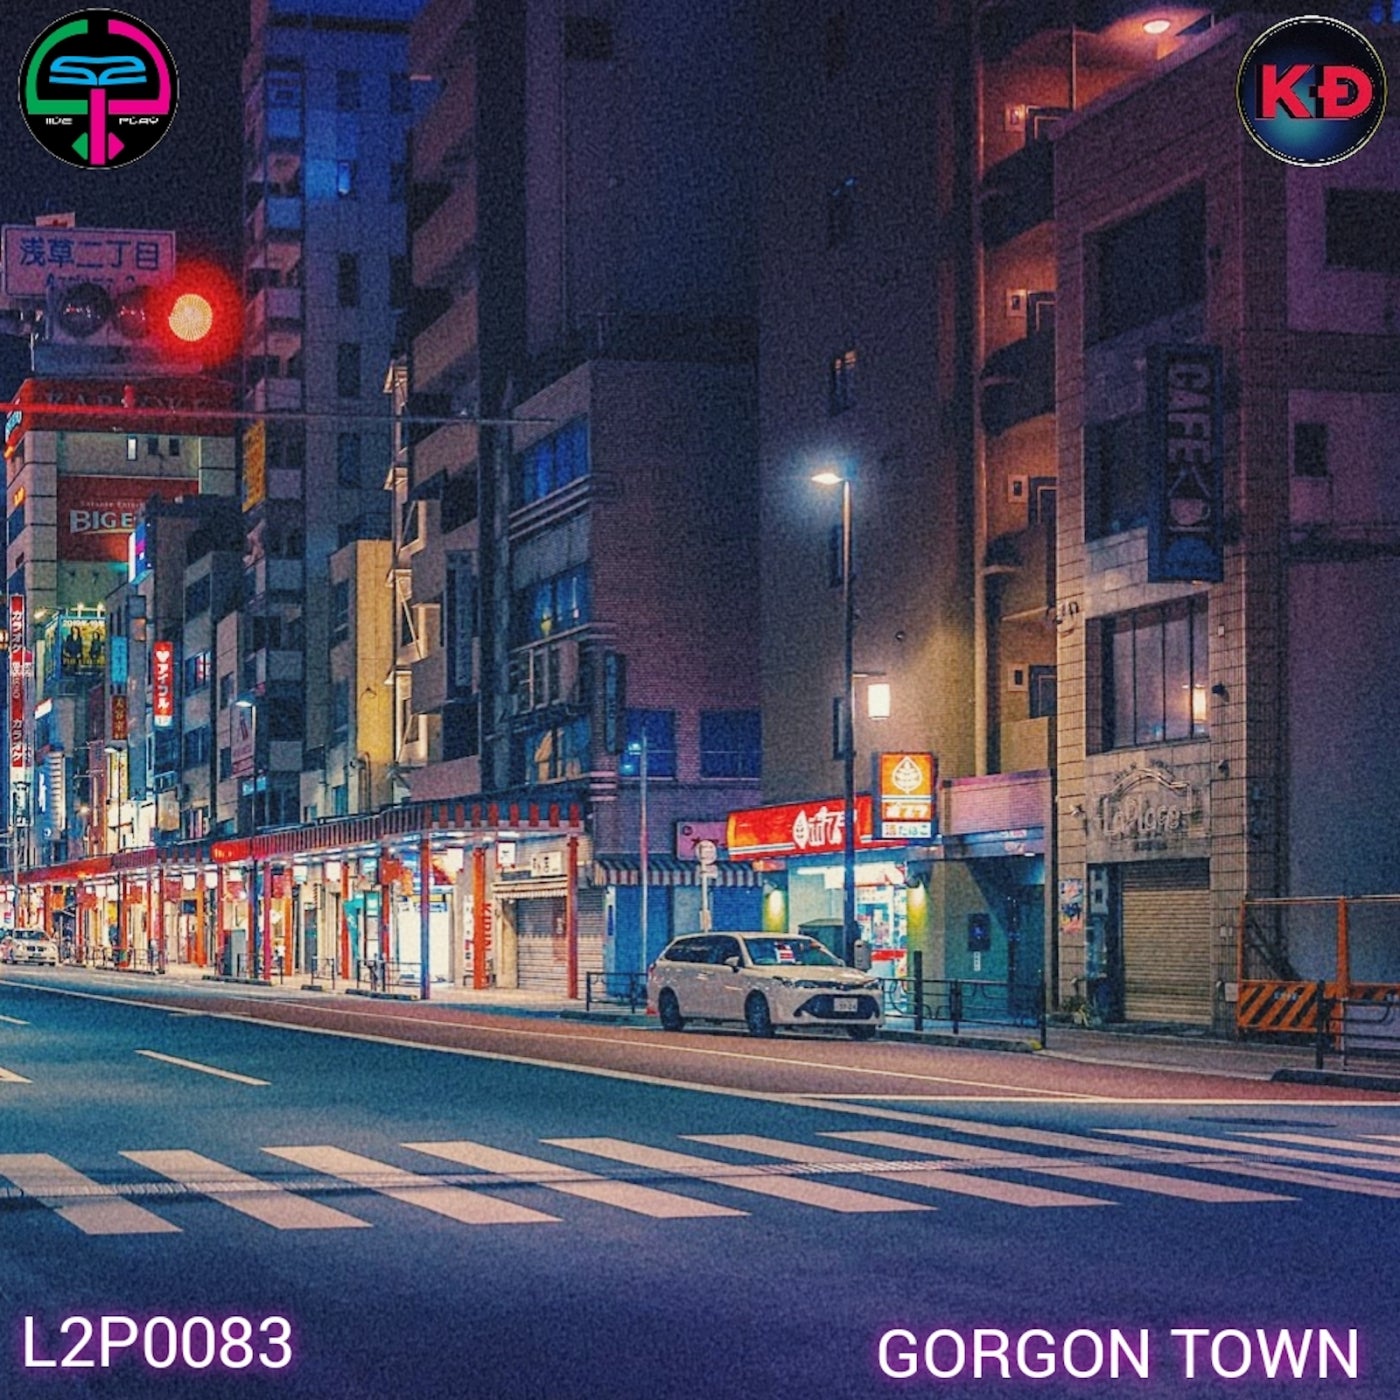 Gorgon town